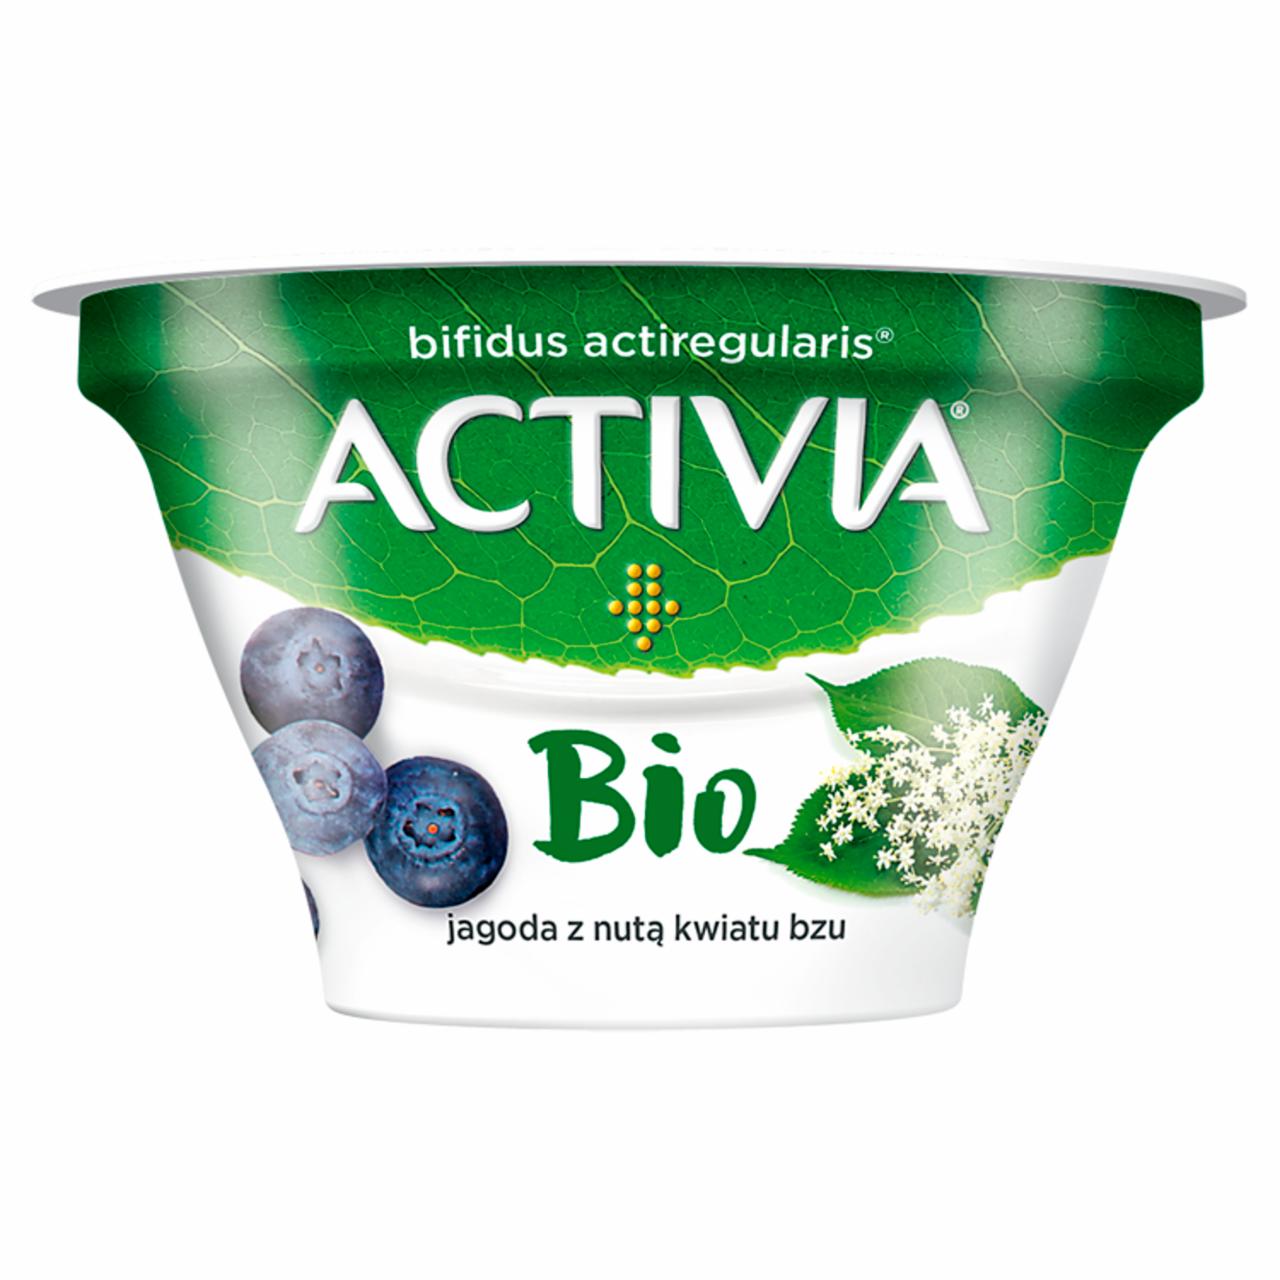 Zdjęcia - Danone Activia Bio Jogurt jagoda z nutą kwiatu bzu 150 g